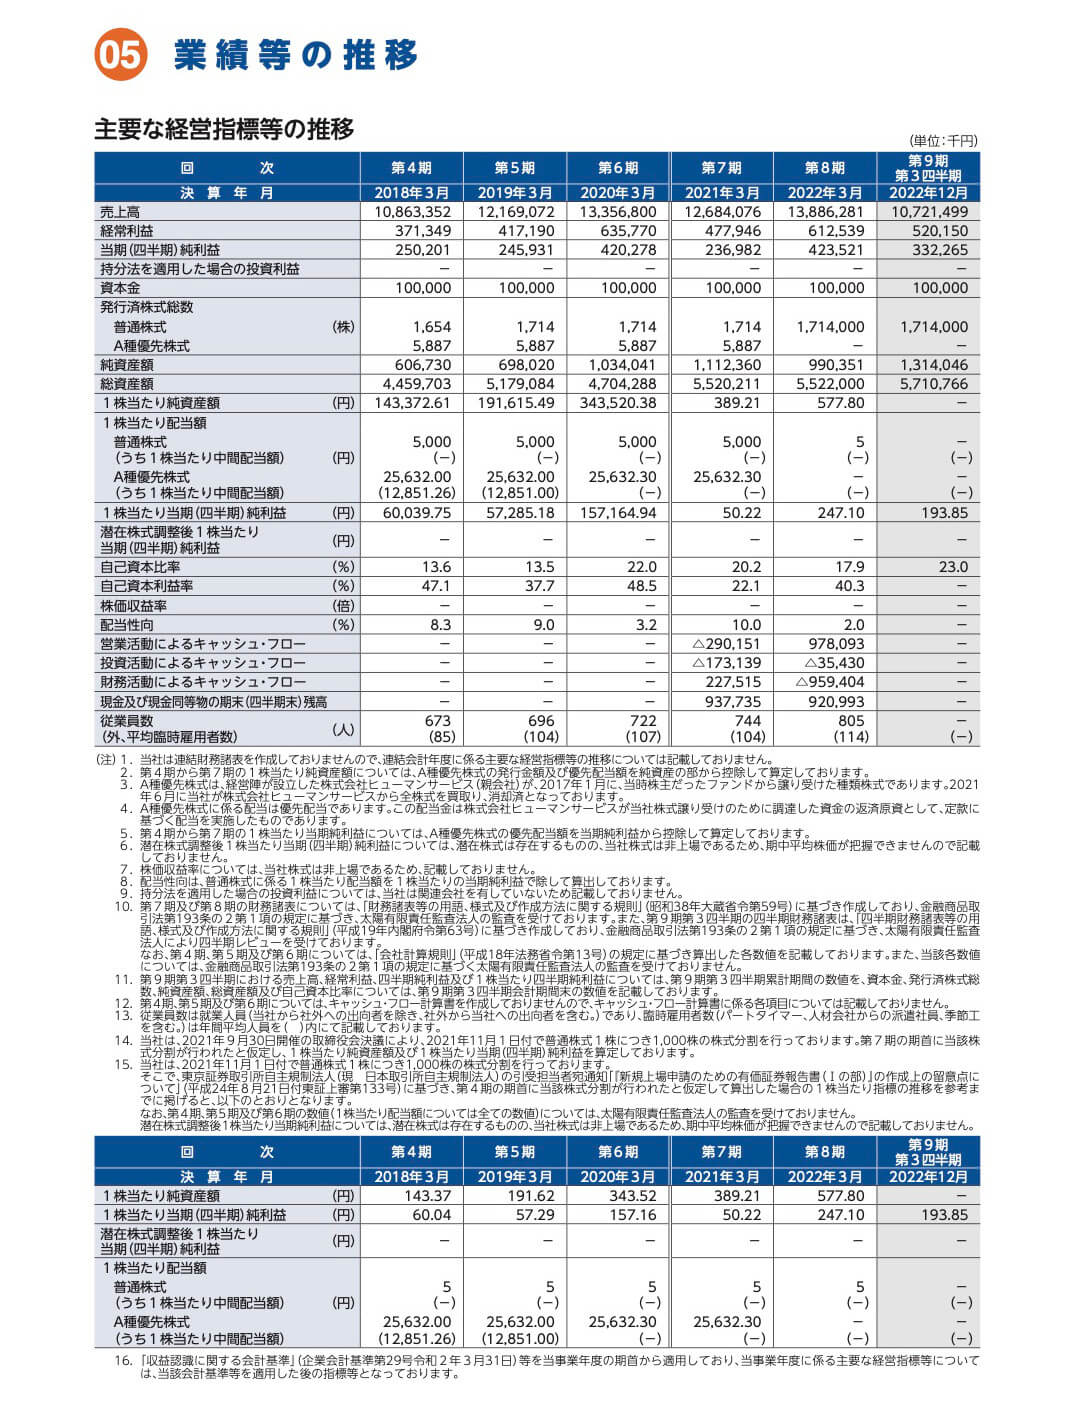 SHINKO(7120)の経営指標等の推移